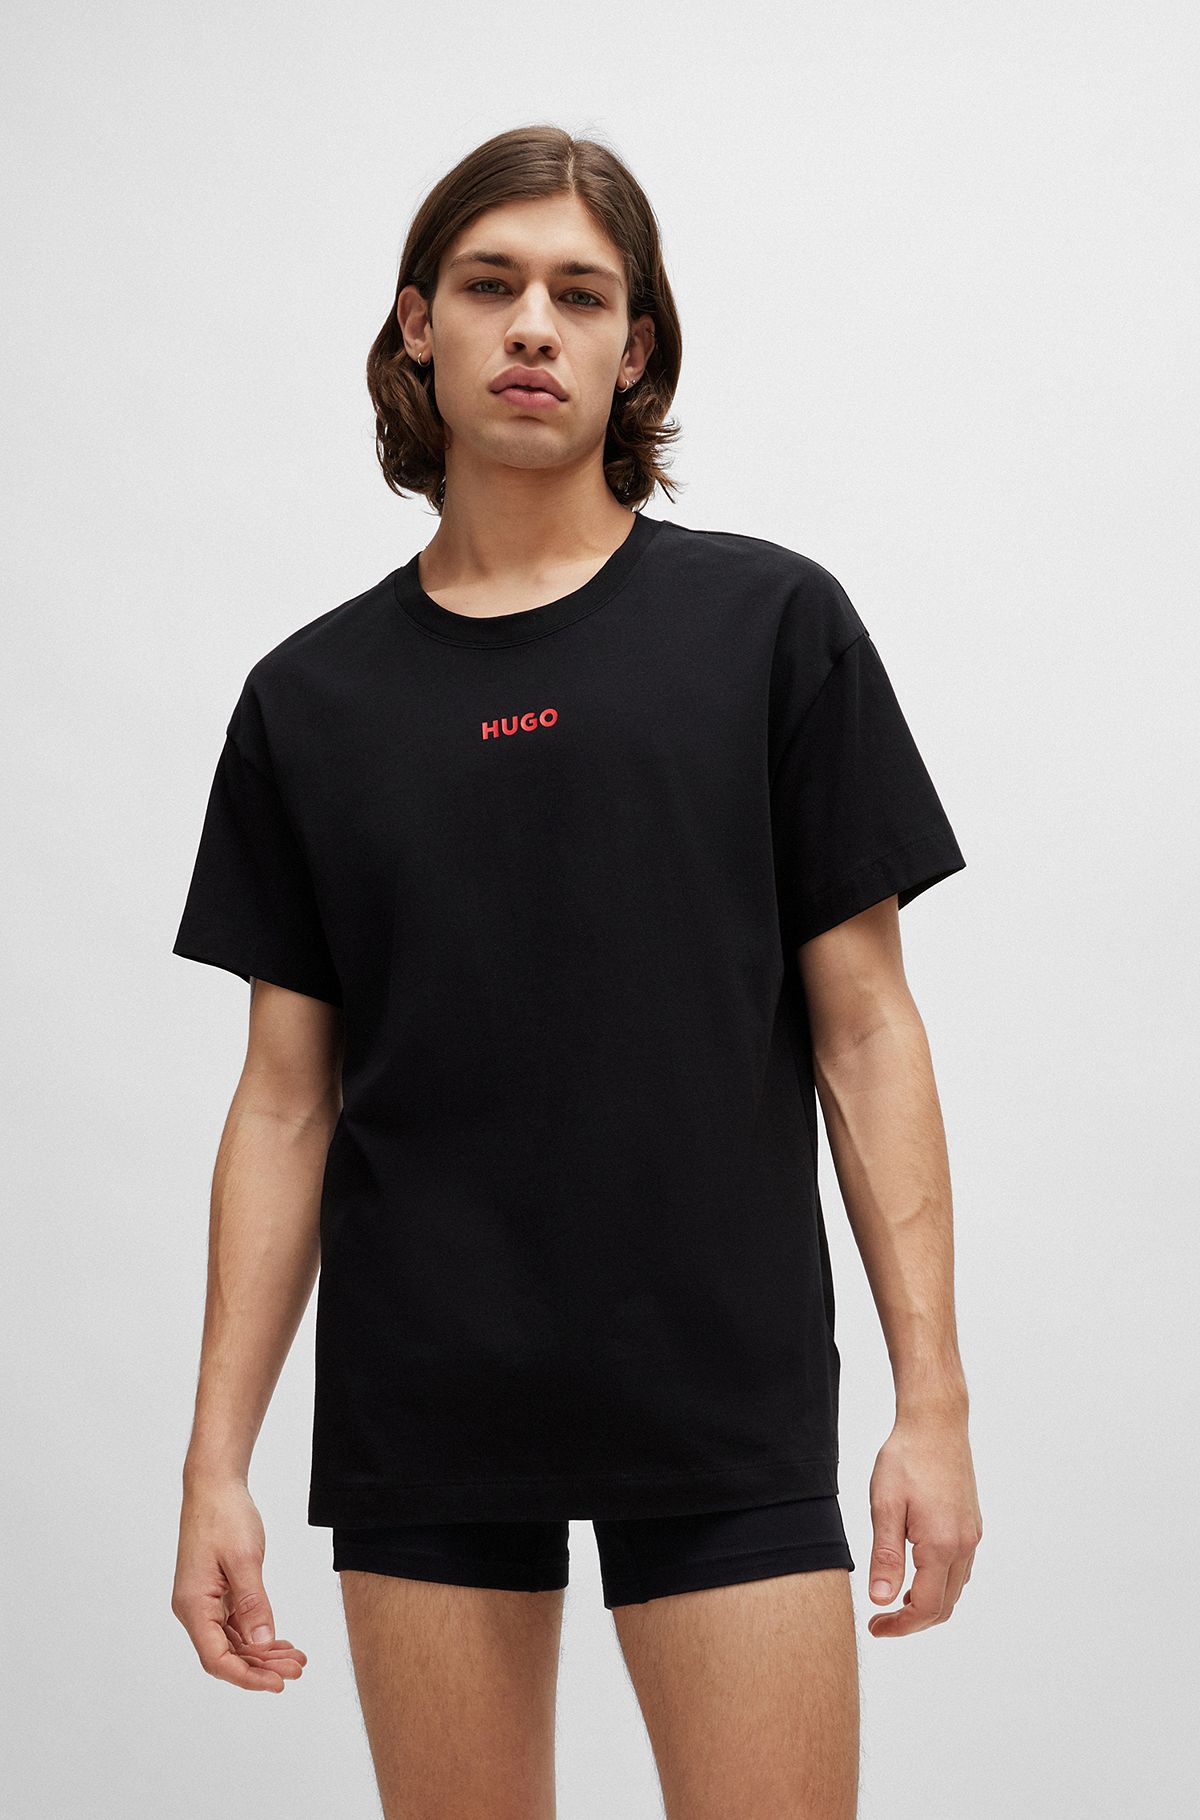 リラックスフィット パジャマTシャツ ストレッチコットン ロゴ, ブラック